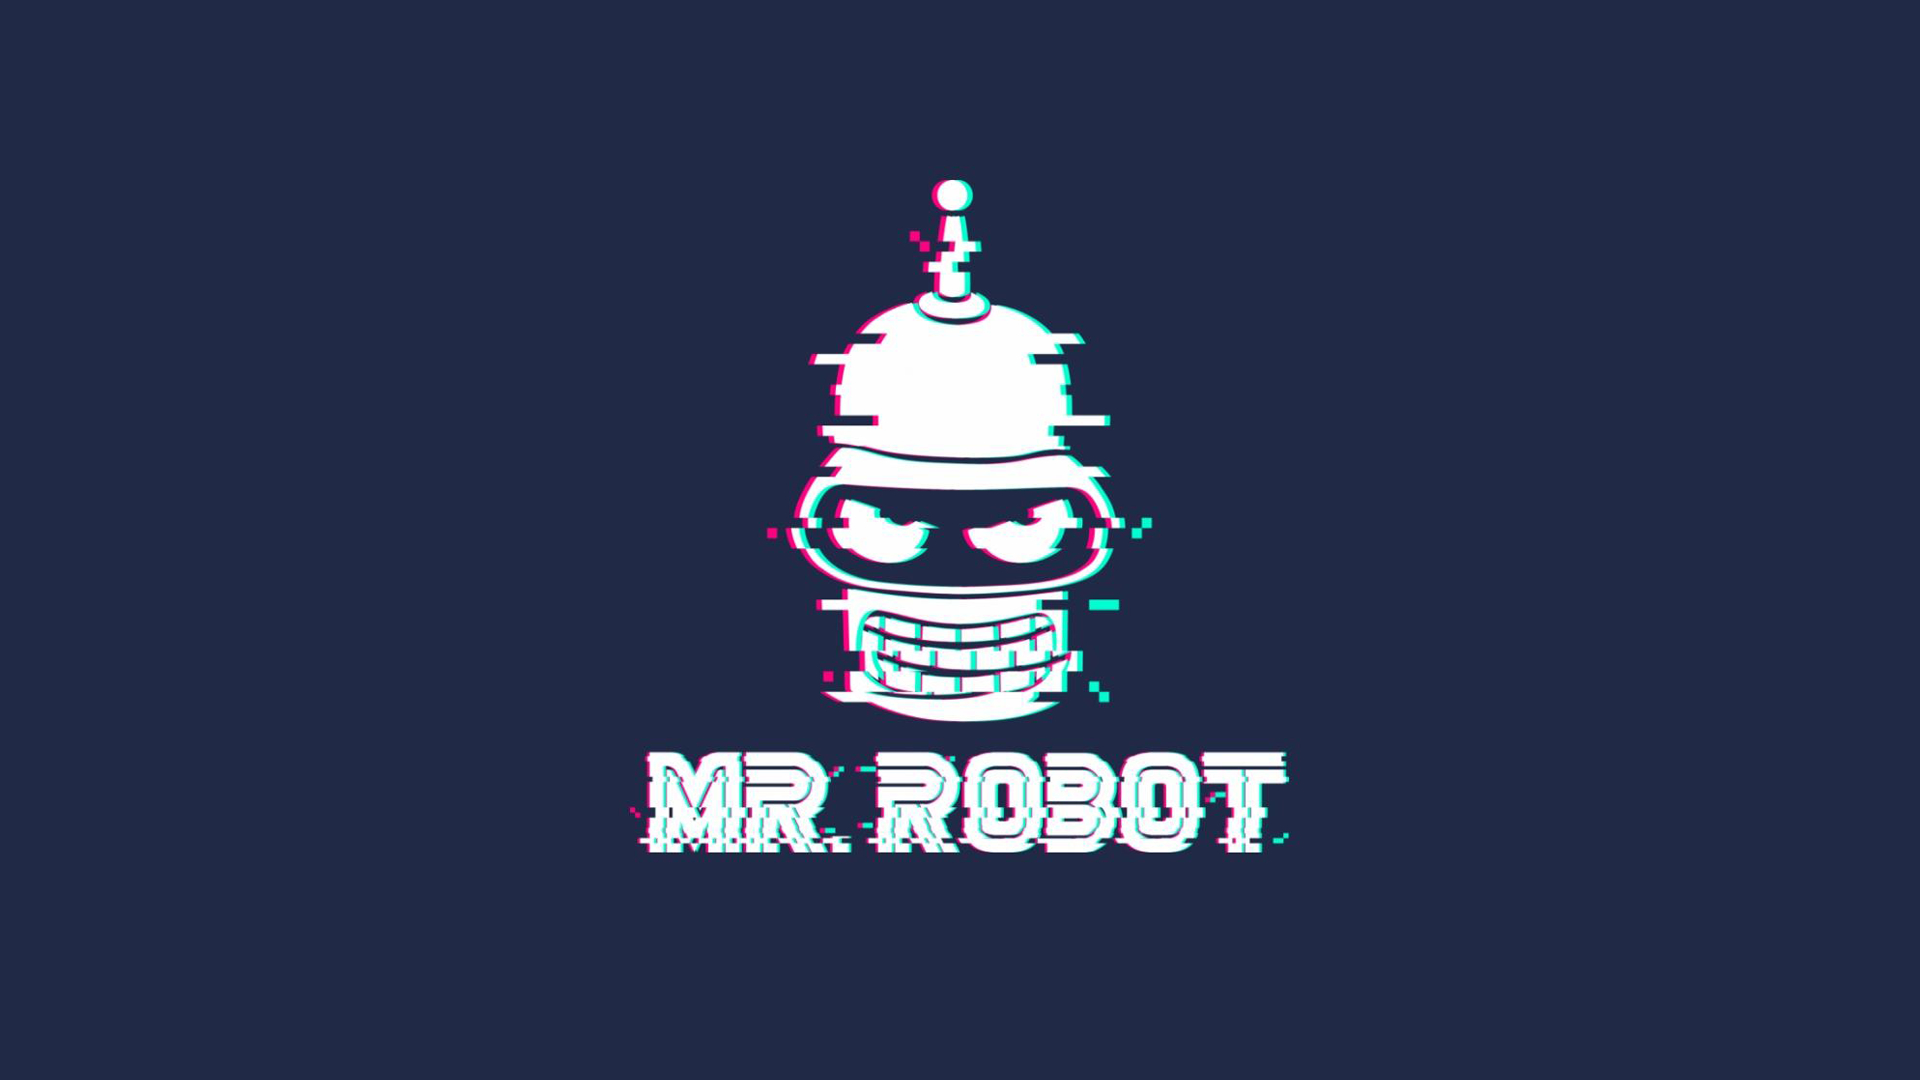 Mr. Robot 4K Wallpaper #4.2306